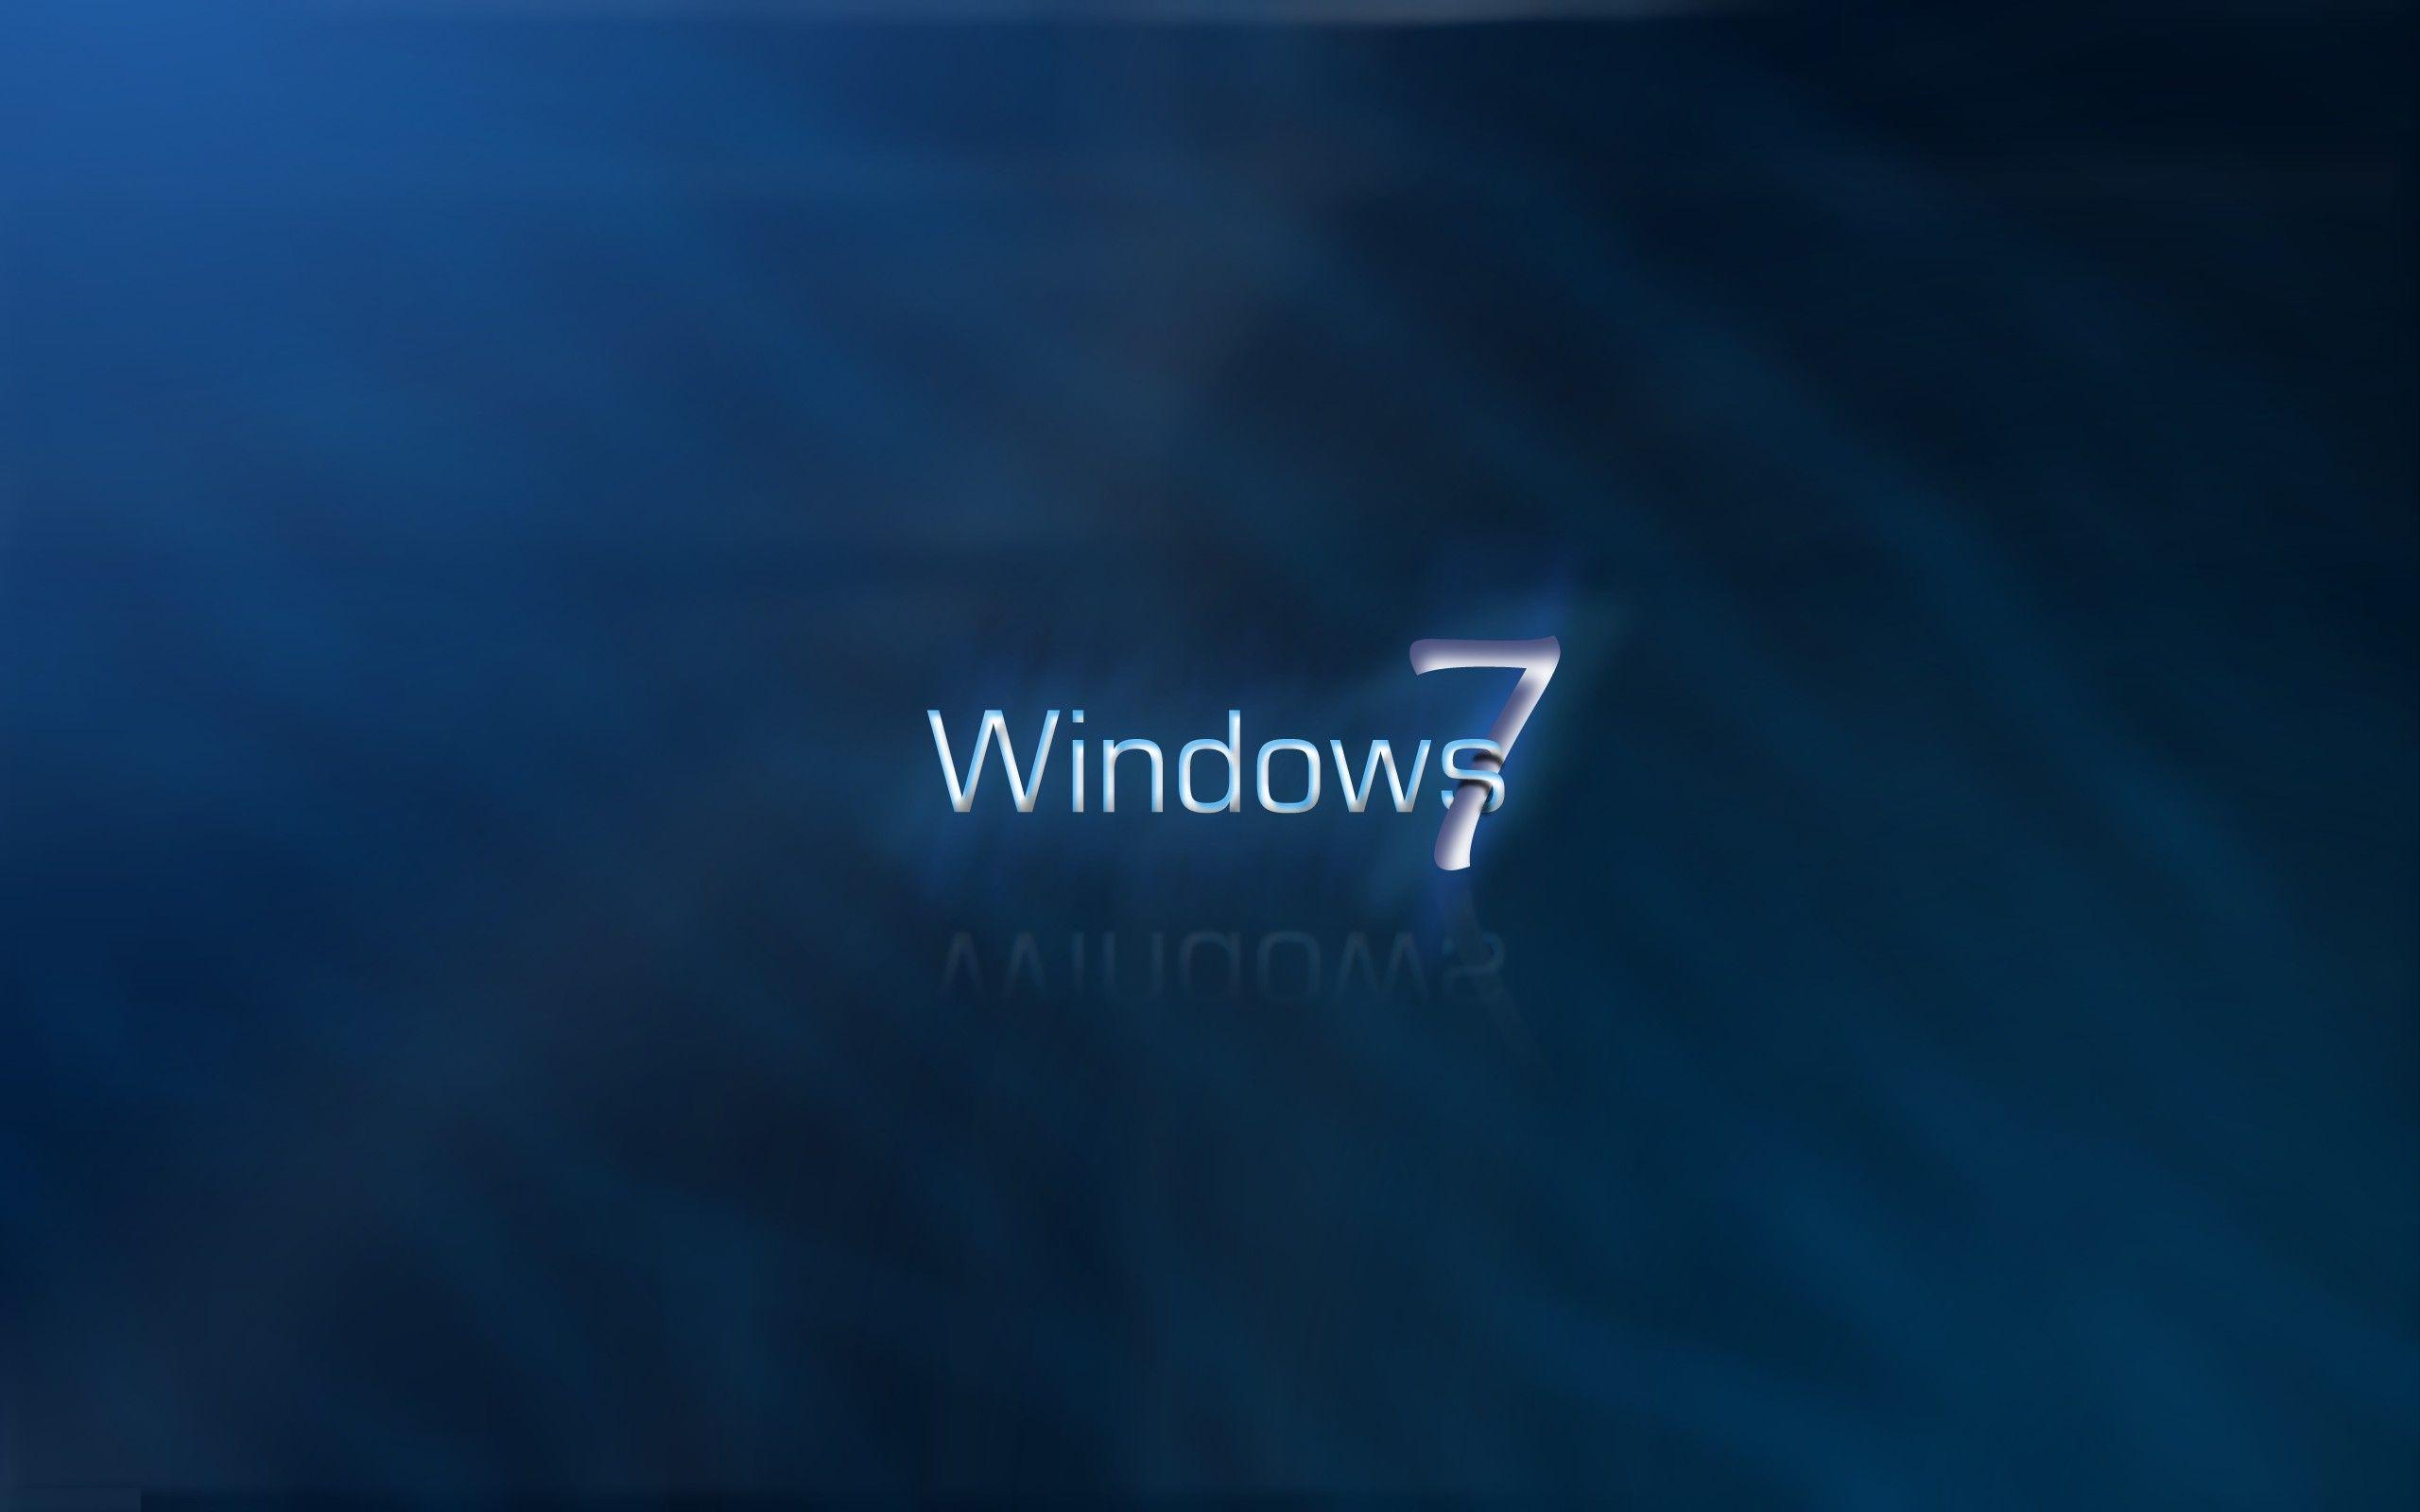 Hình nền Windows 7 - Windows 7 là một trong những hệ điều hành được yêu thích nhất mọi thời đại. Hãy xem những bức hình nền Windows 7 đẹp mắt nhất giúp máy tính của bạn thêm bắt mắt và cá tính.